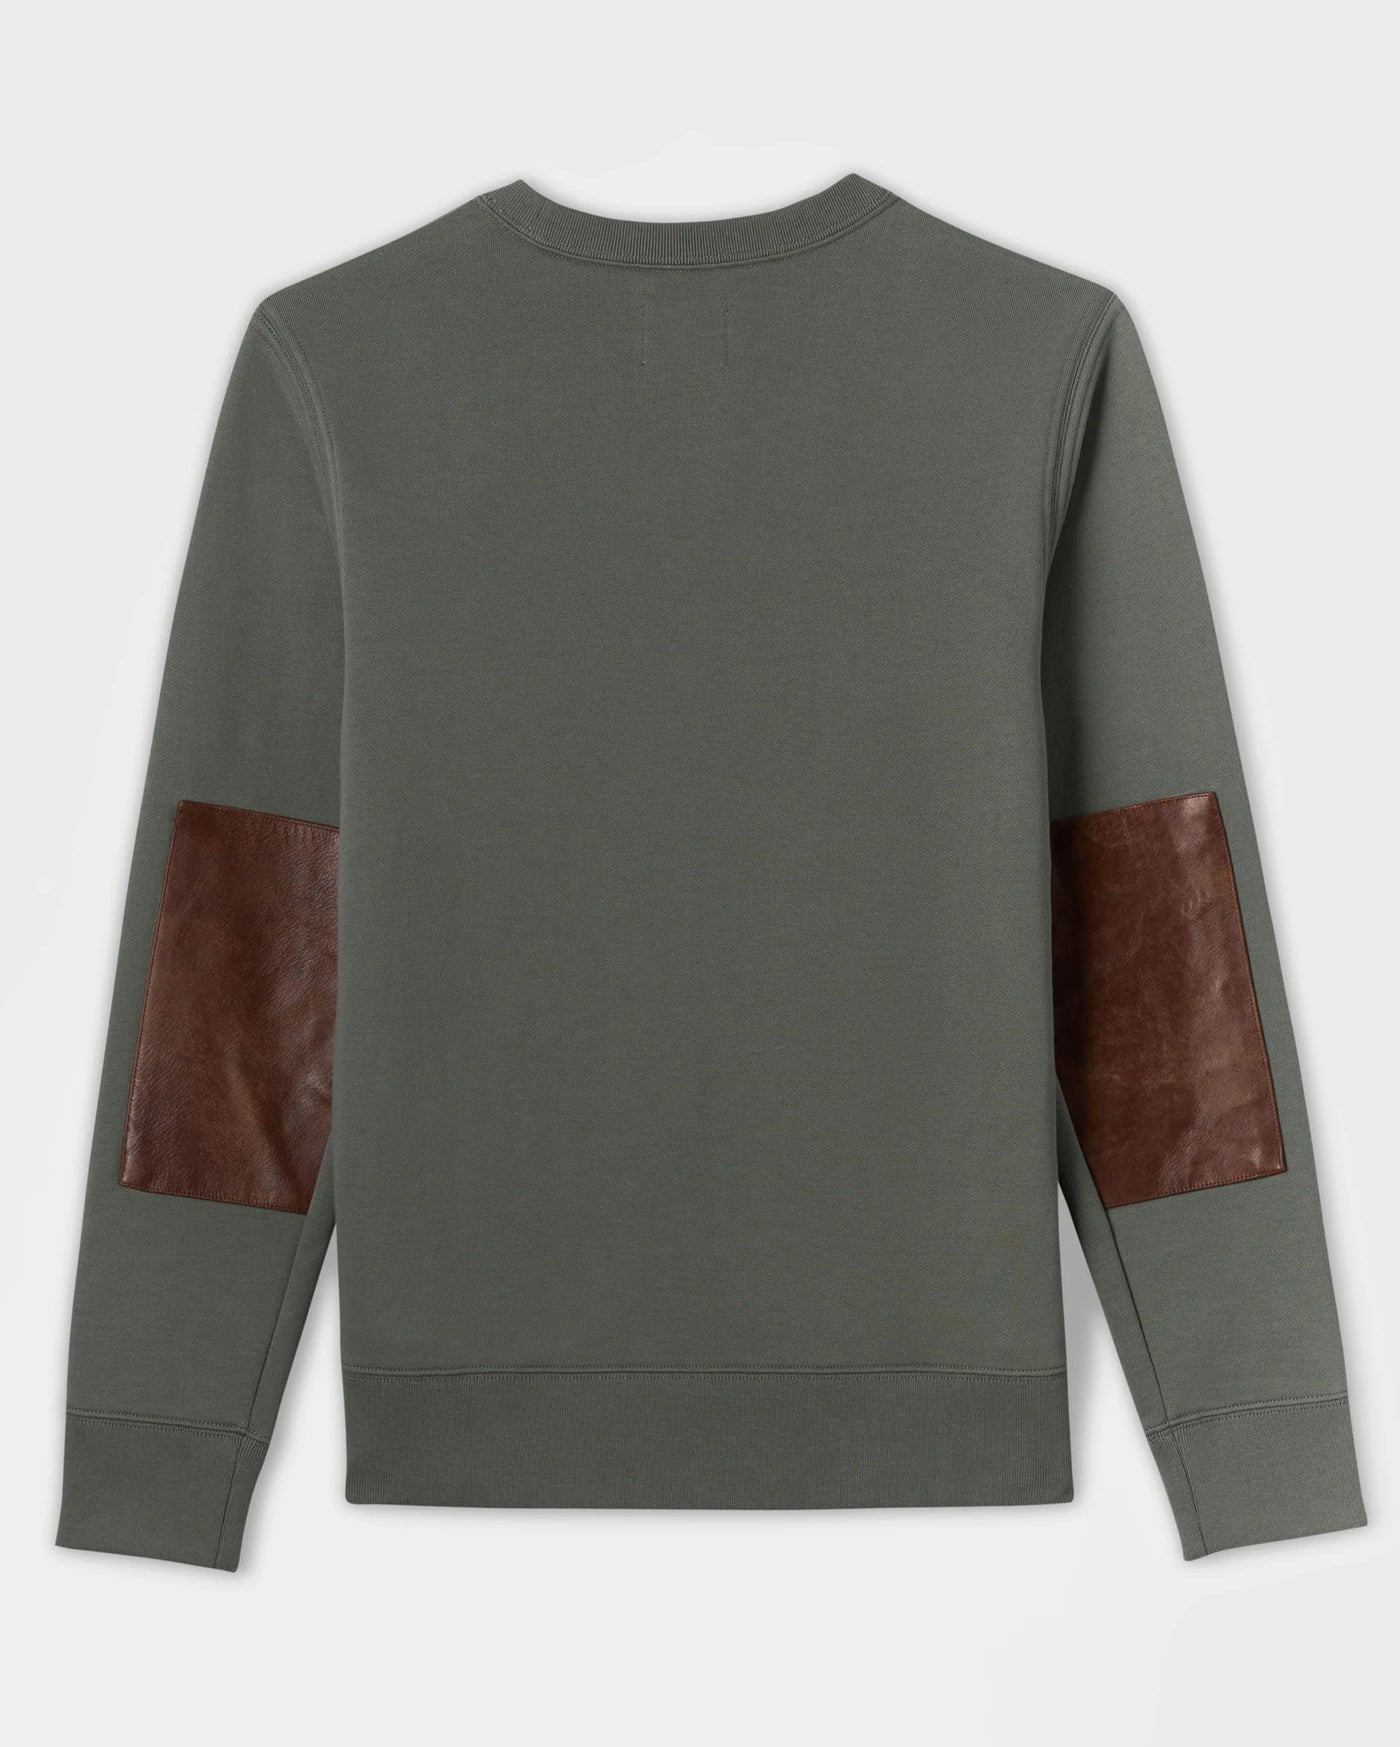 BILLY REID Dover Sweatshirt | Grey Green